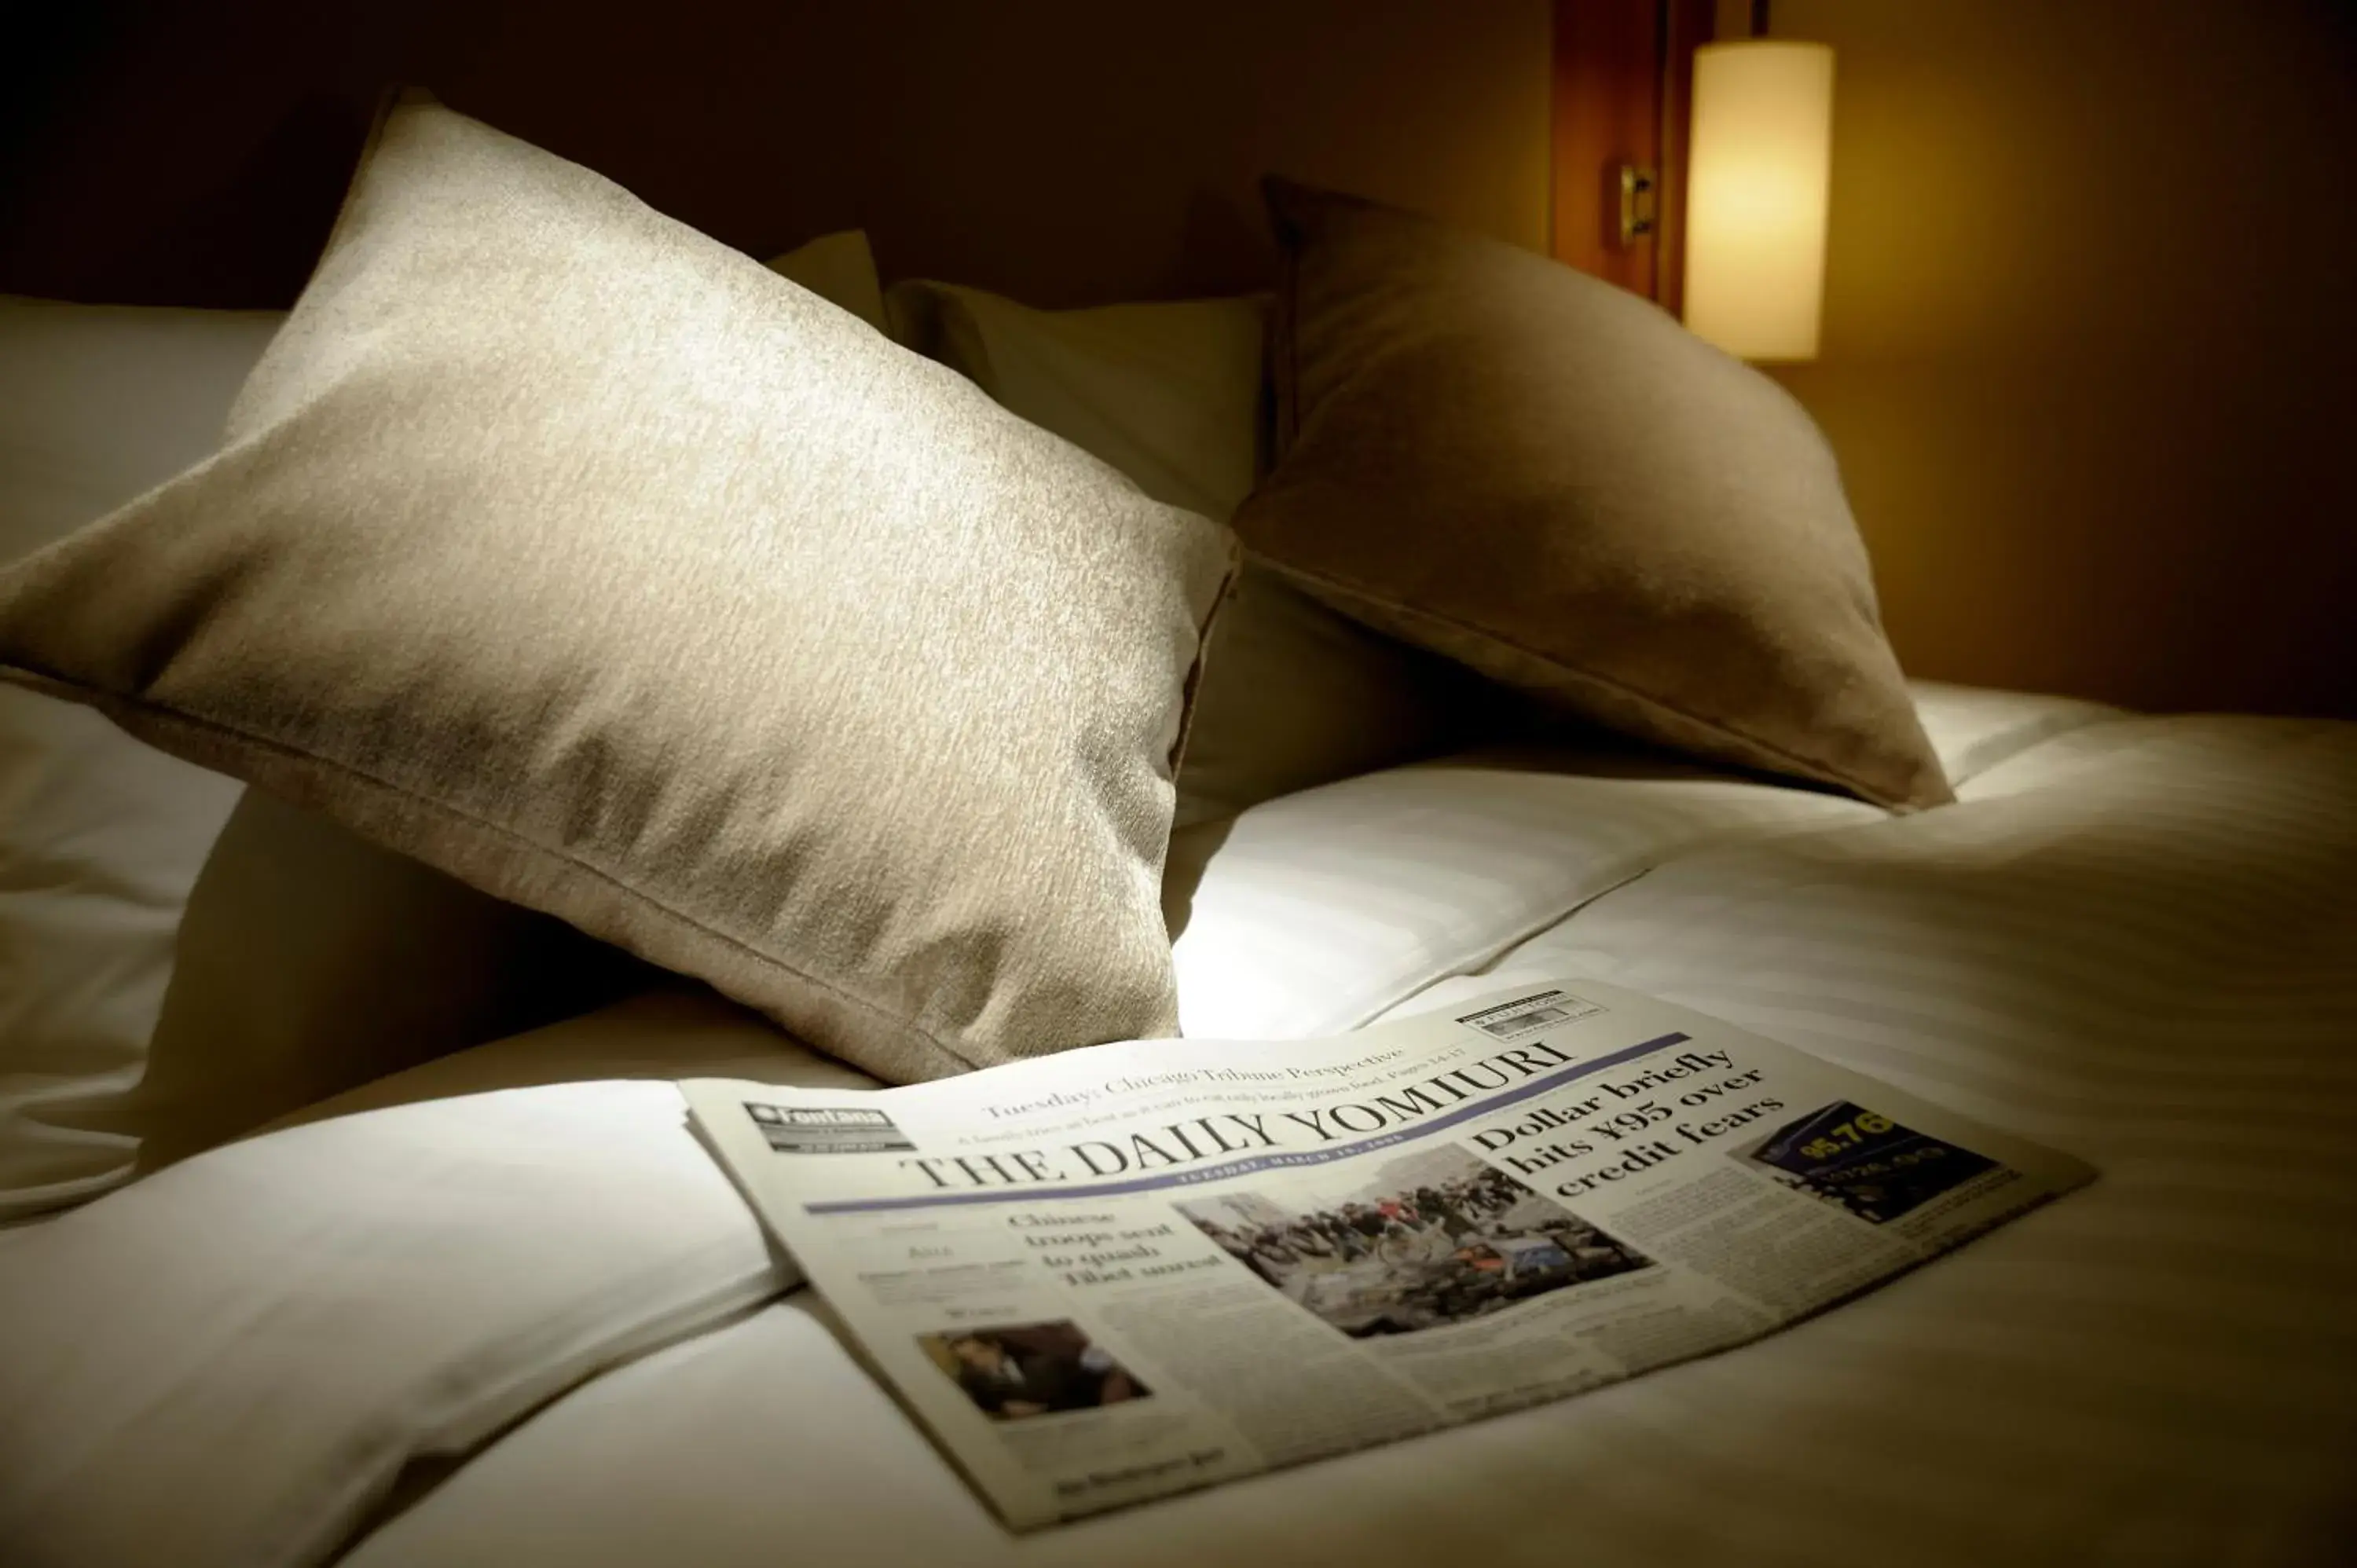 Photo of the whole room, Bed in Hotel Associa Shin-Yokohama